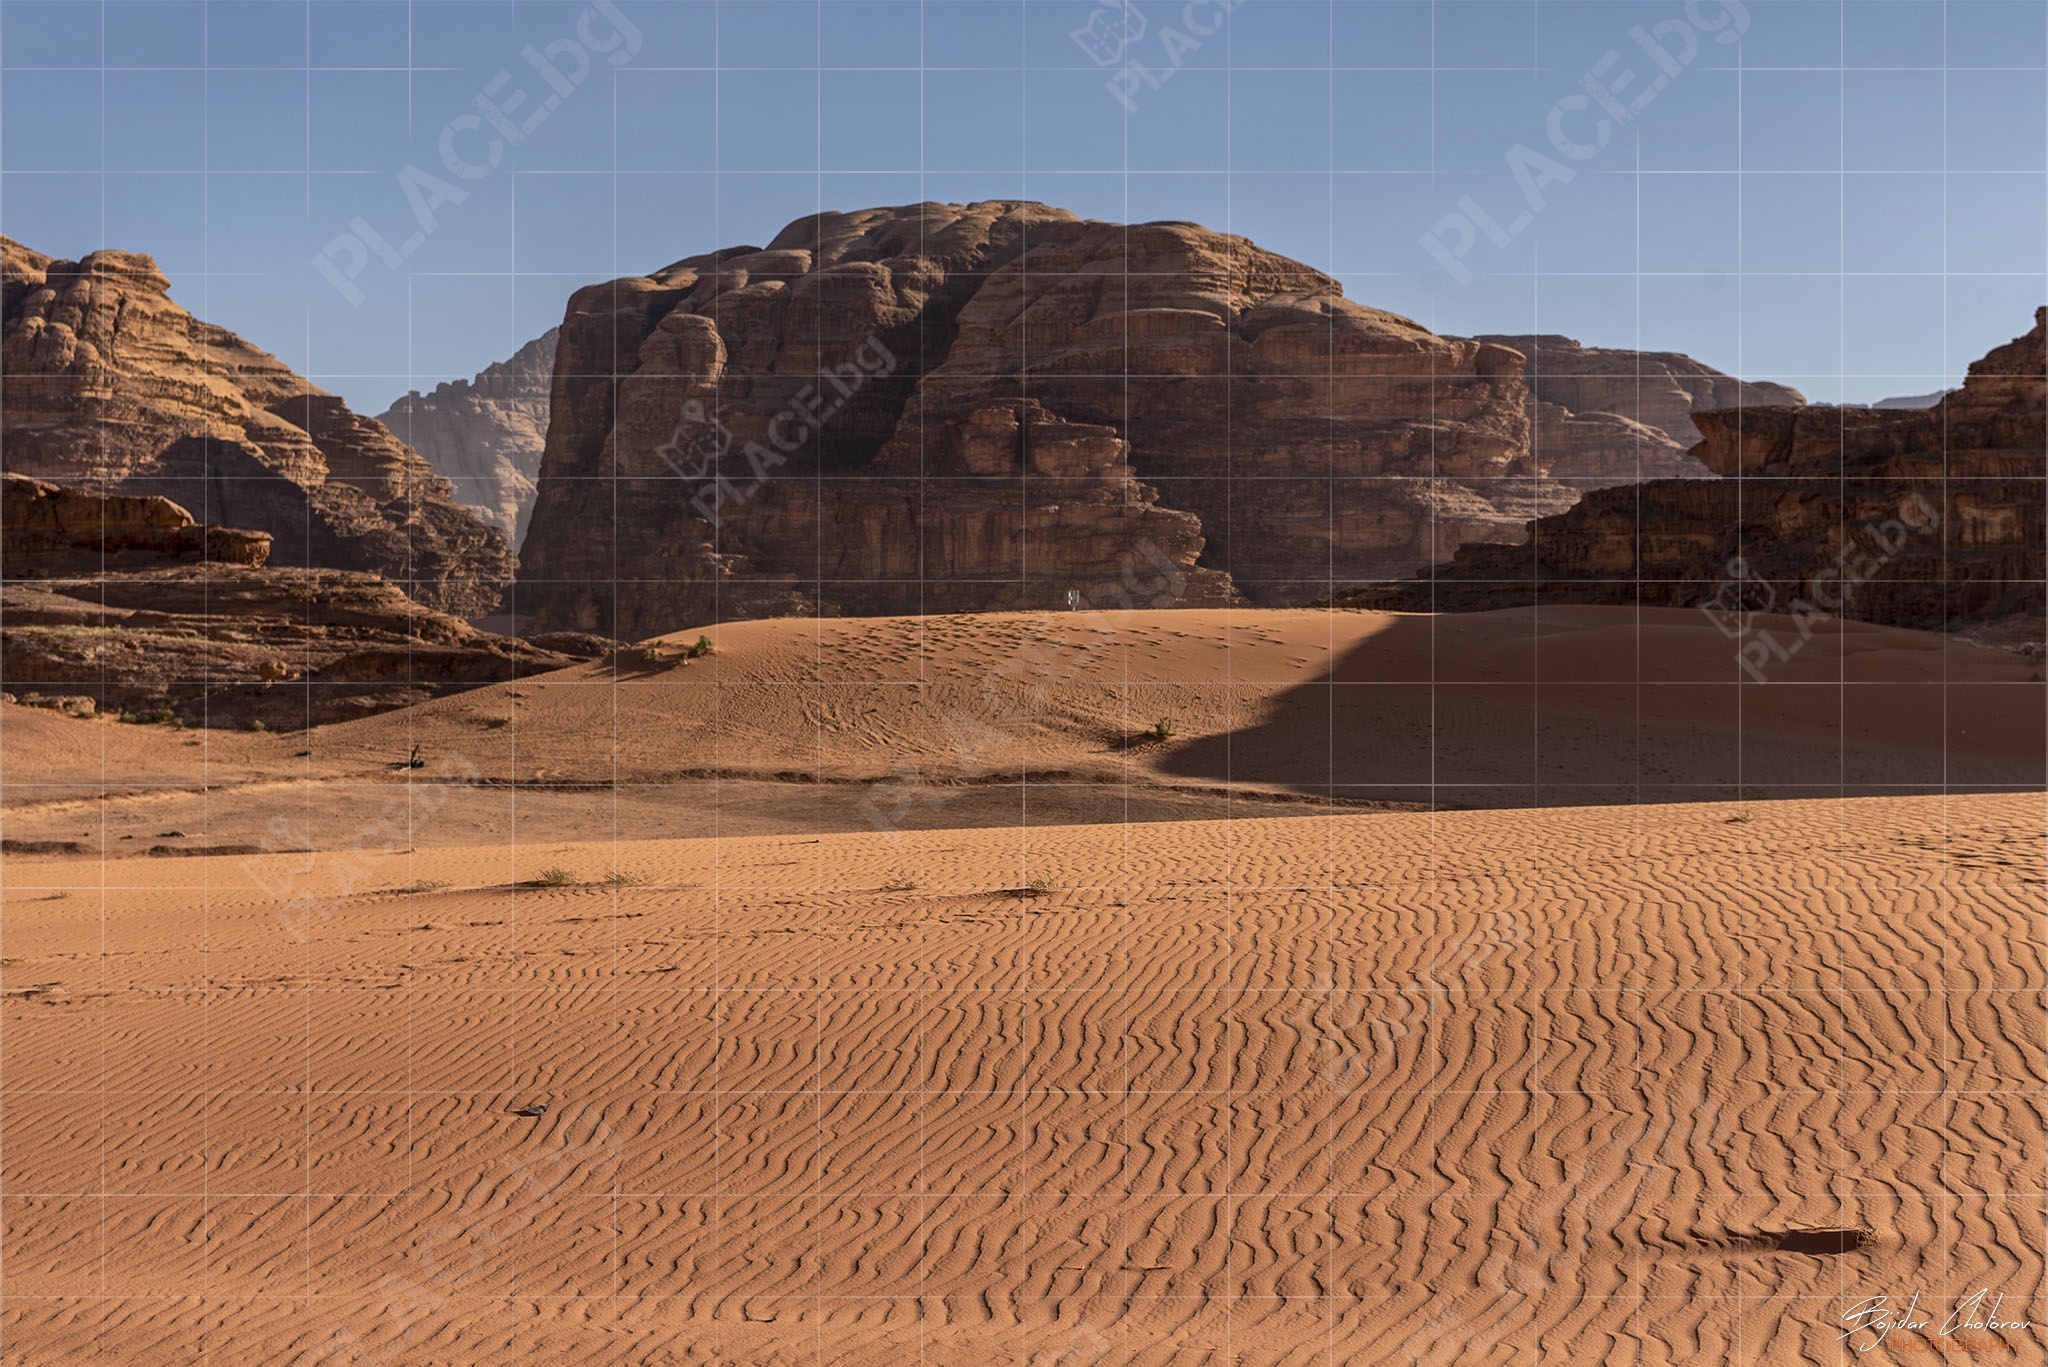 Wadi_Rum_Hiking_Tour_BCH_5187